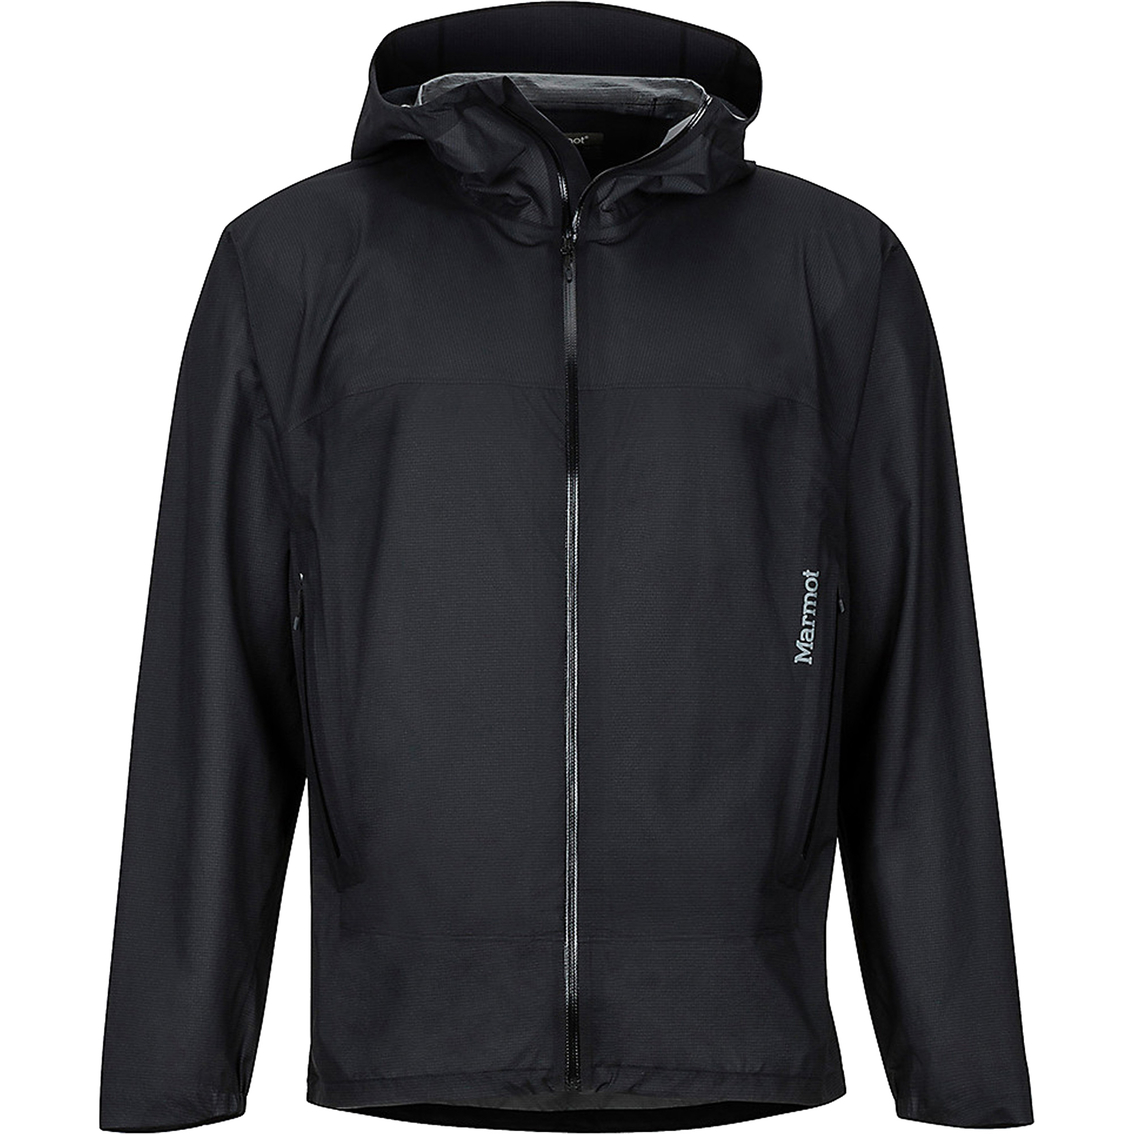 Marmot Bantamweight Jacket | Jackets | Clothing & Accessories | Shop ...